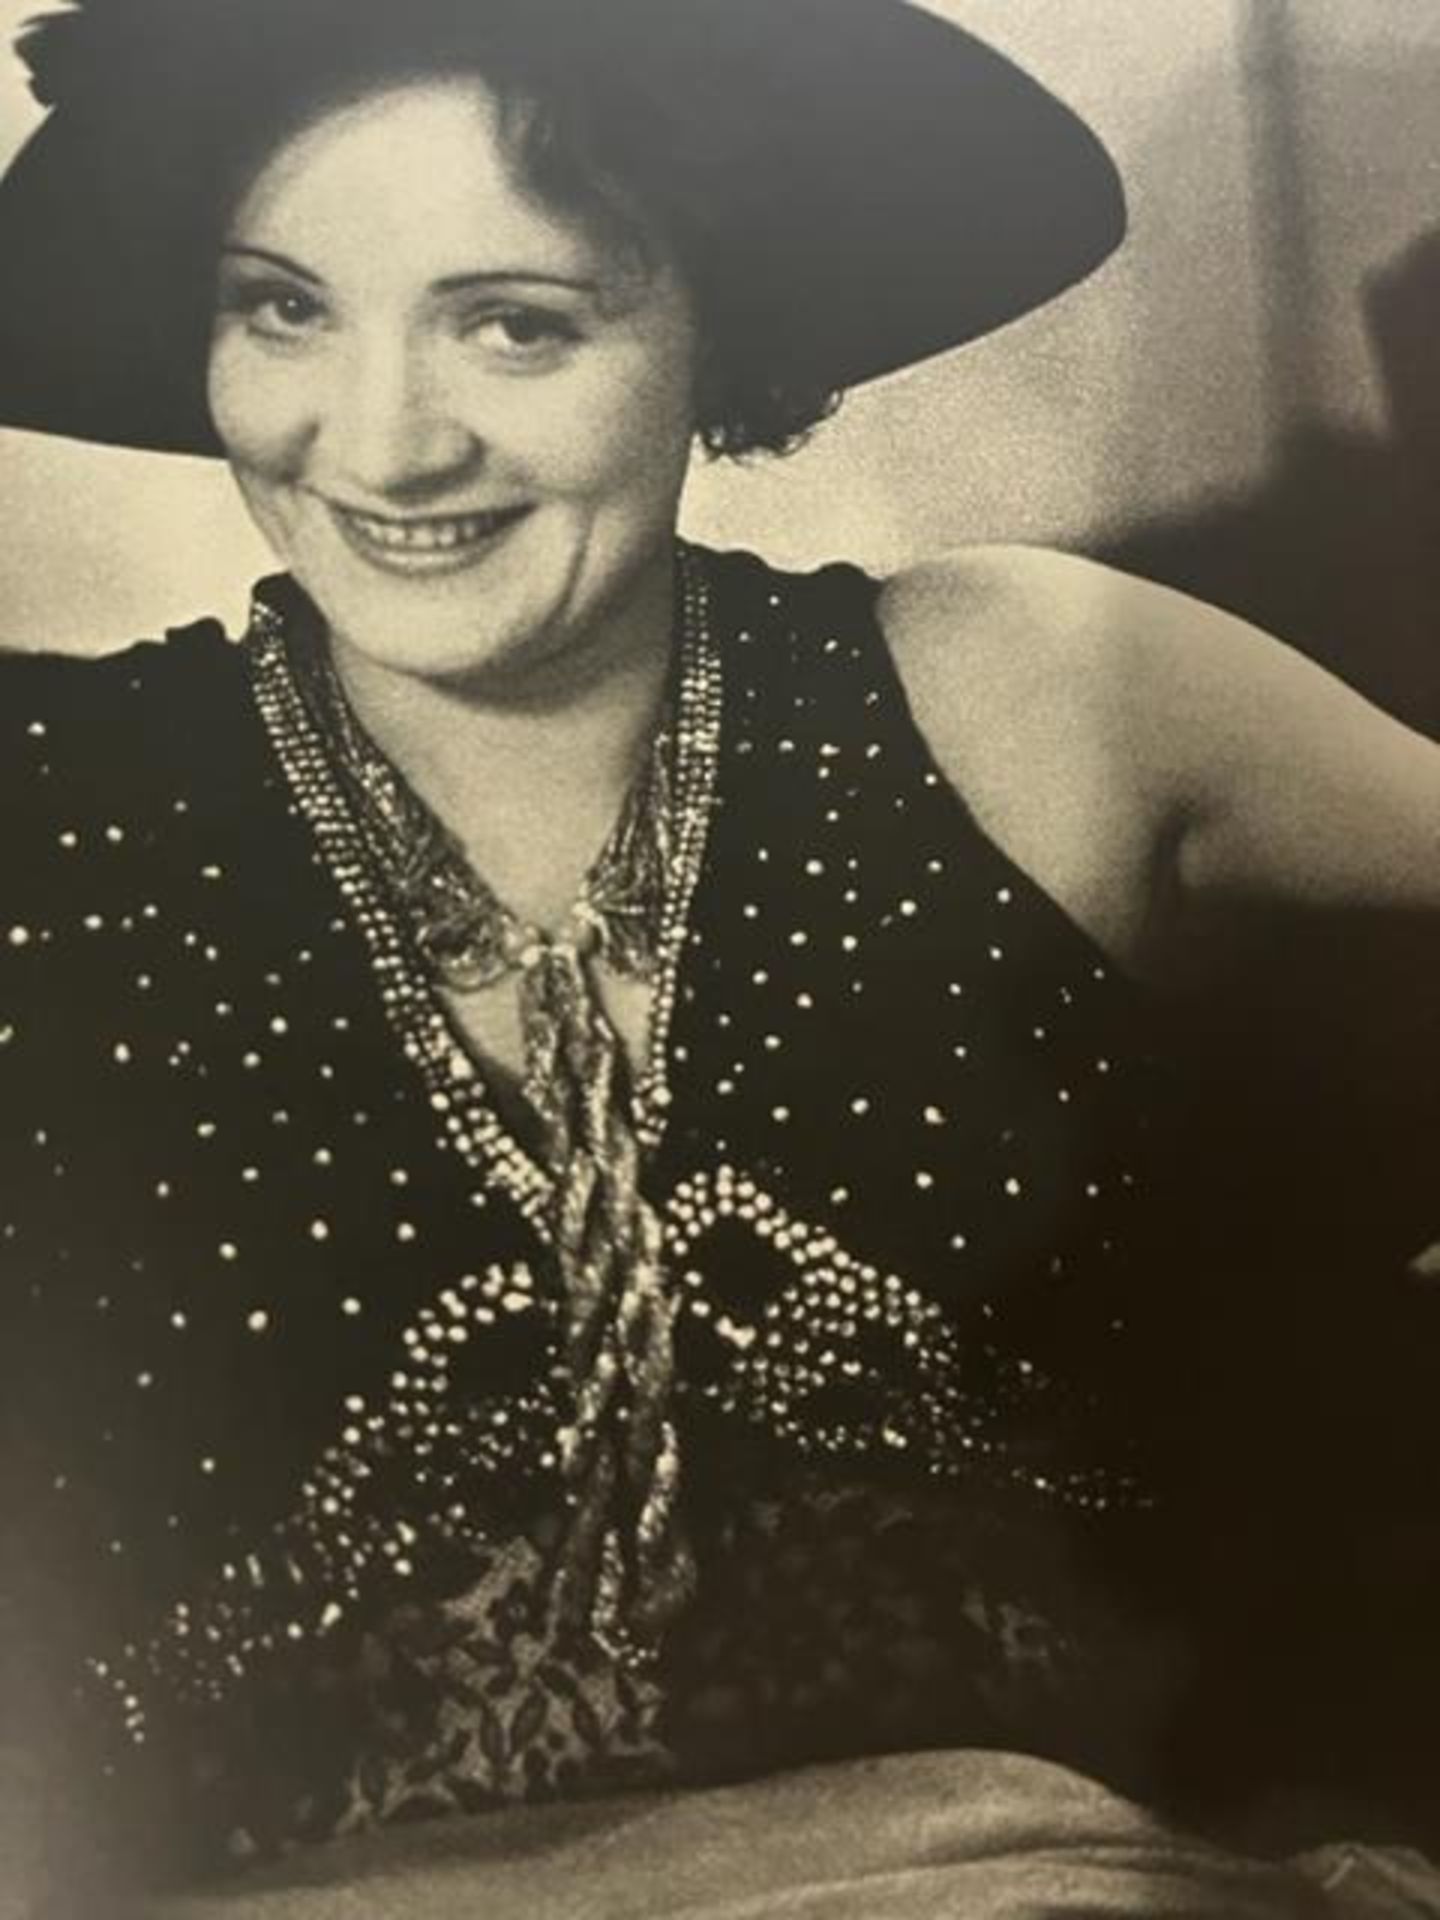 Alfred Eisenstaedt "Marlene Dietrich" Print. - Image 3 of 6